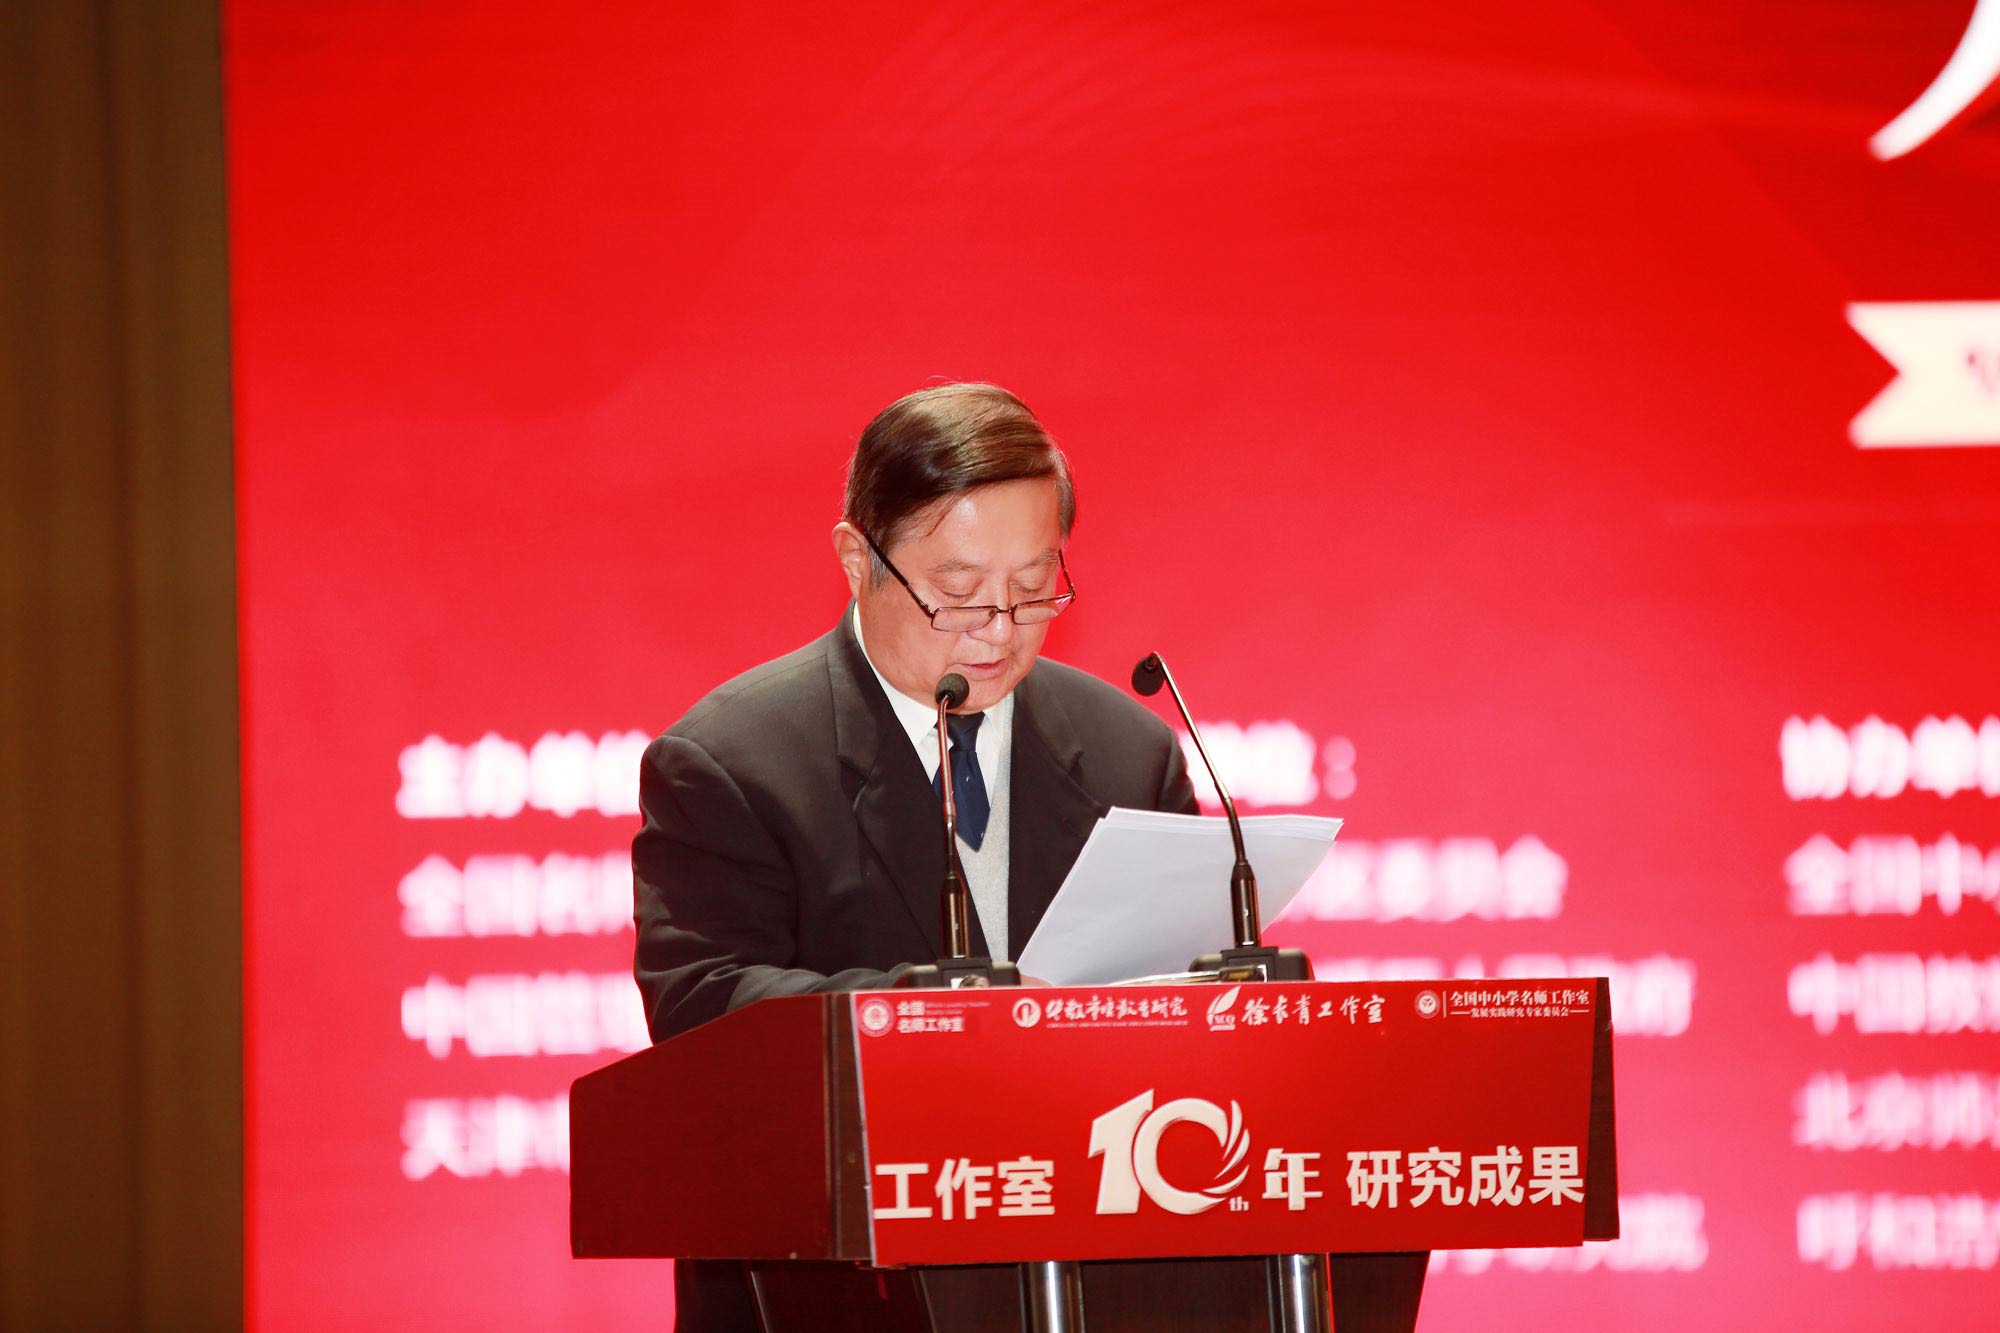 清华大学教授魏续臻同志主持了开幕式 。